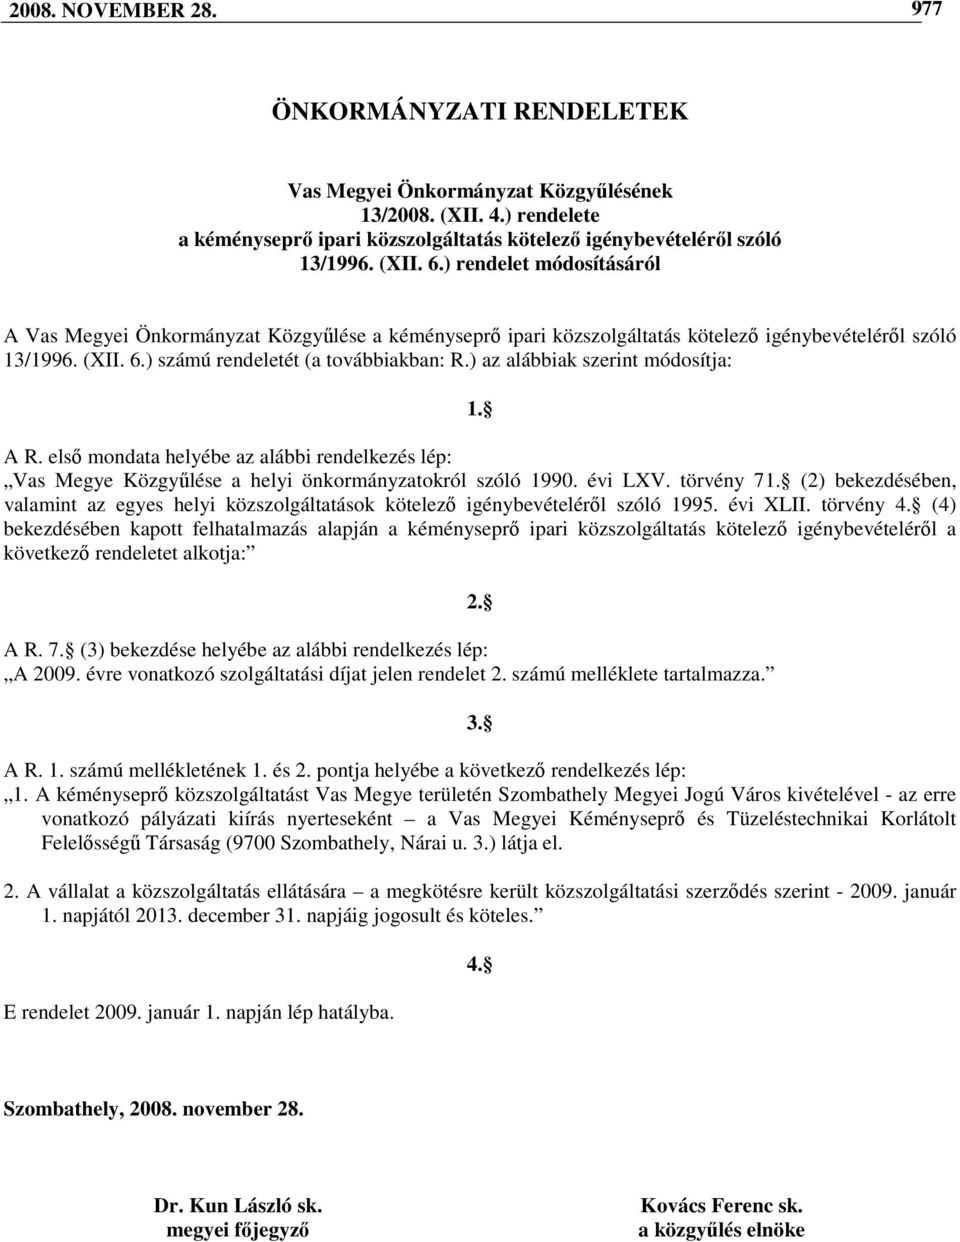 ) az alábbiak szerint módosítja: 1. A R. elsı mondata helyébe az alábbi rendelkezés lép: Vas Megye Közgyőlése a helyi önkormányzatokról szóló 1990. évi LXV. törvény 71.